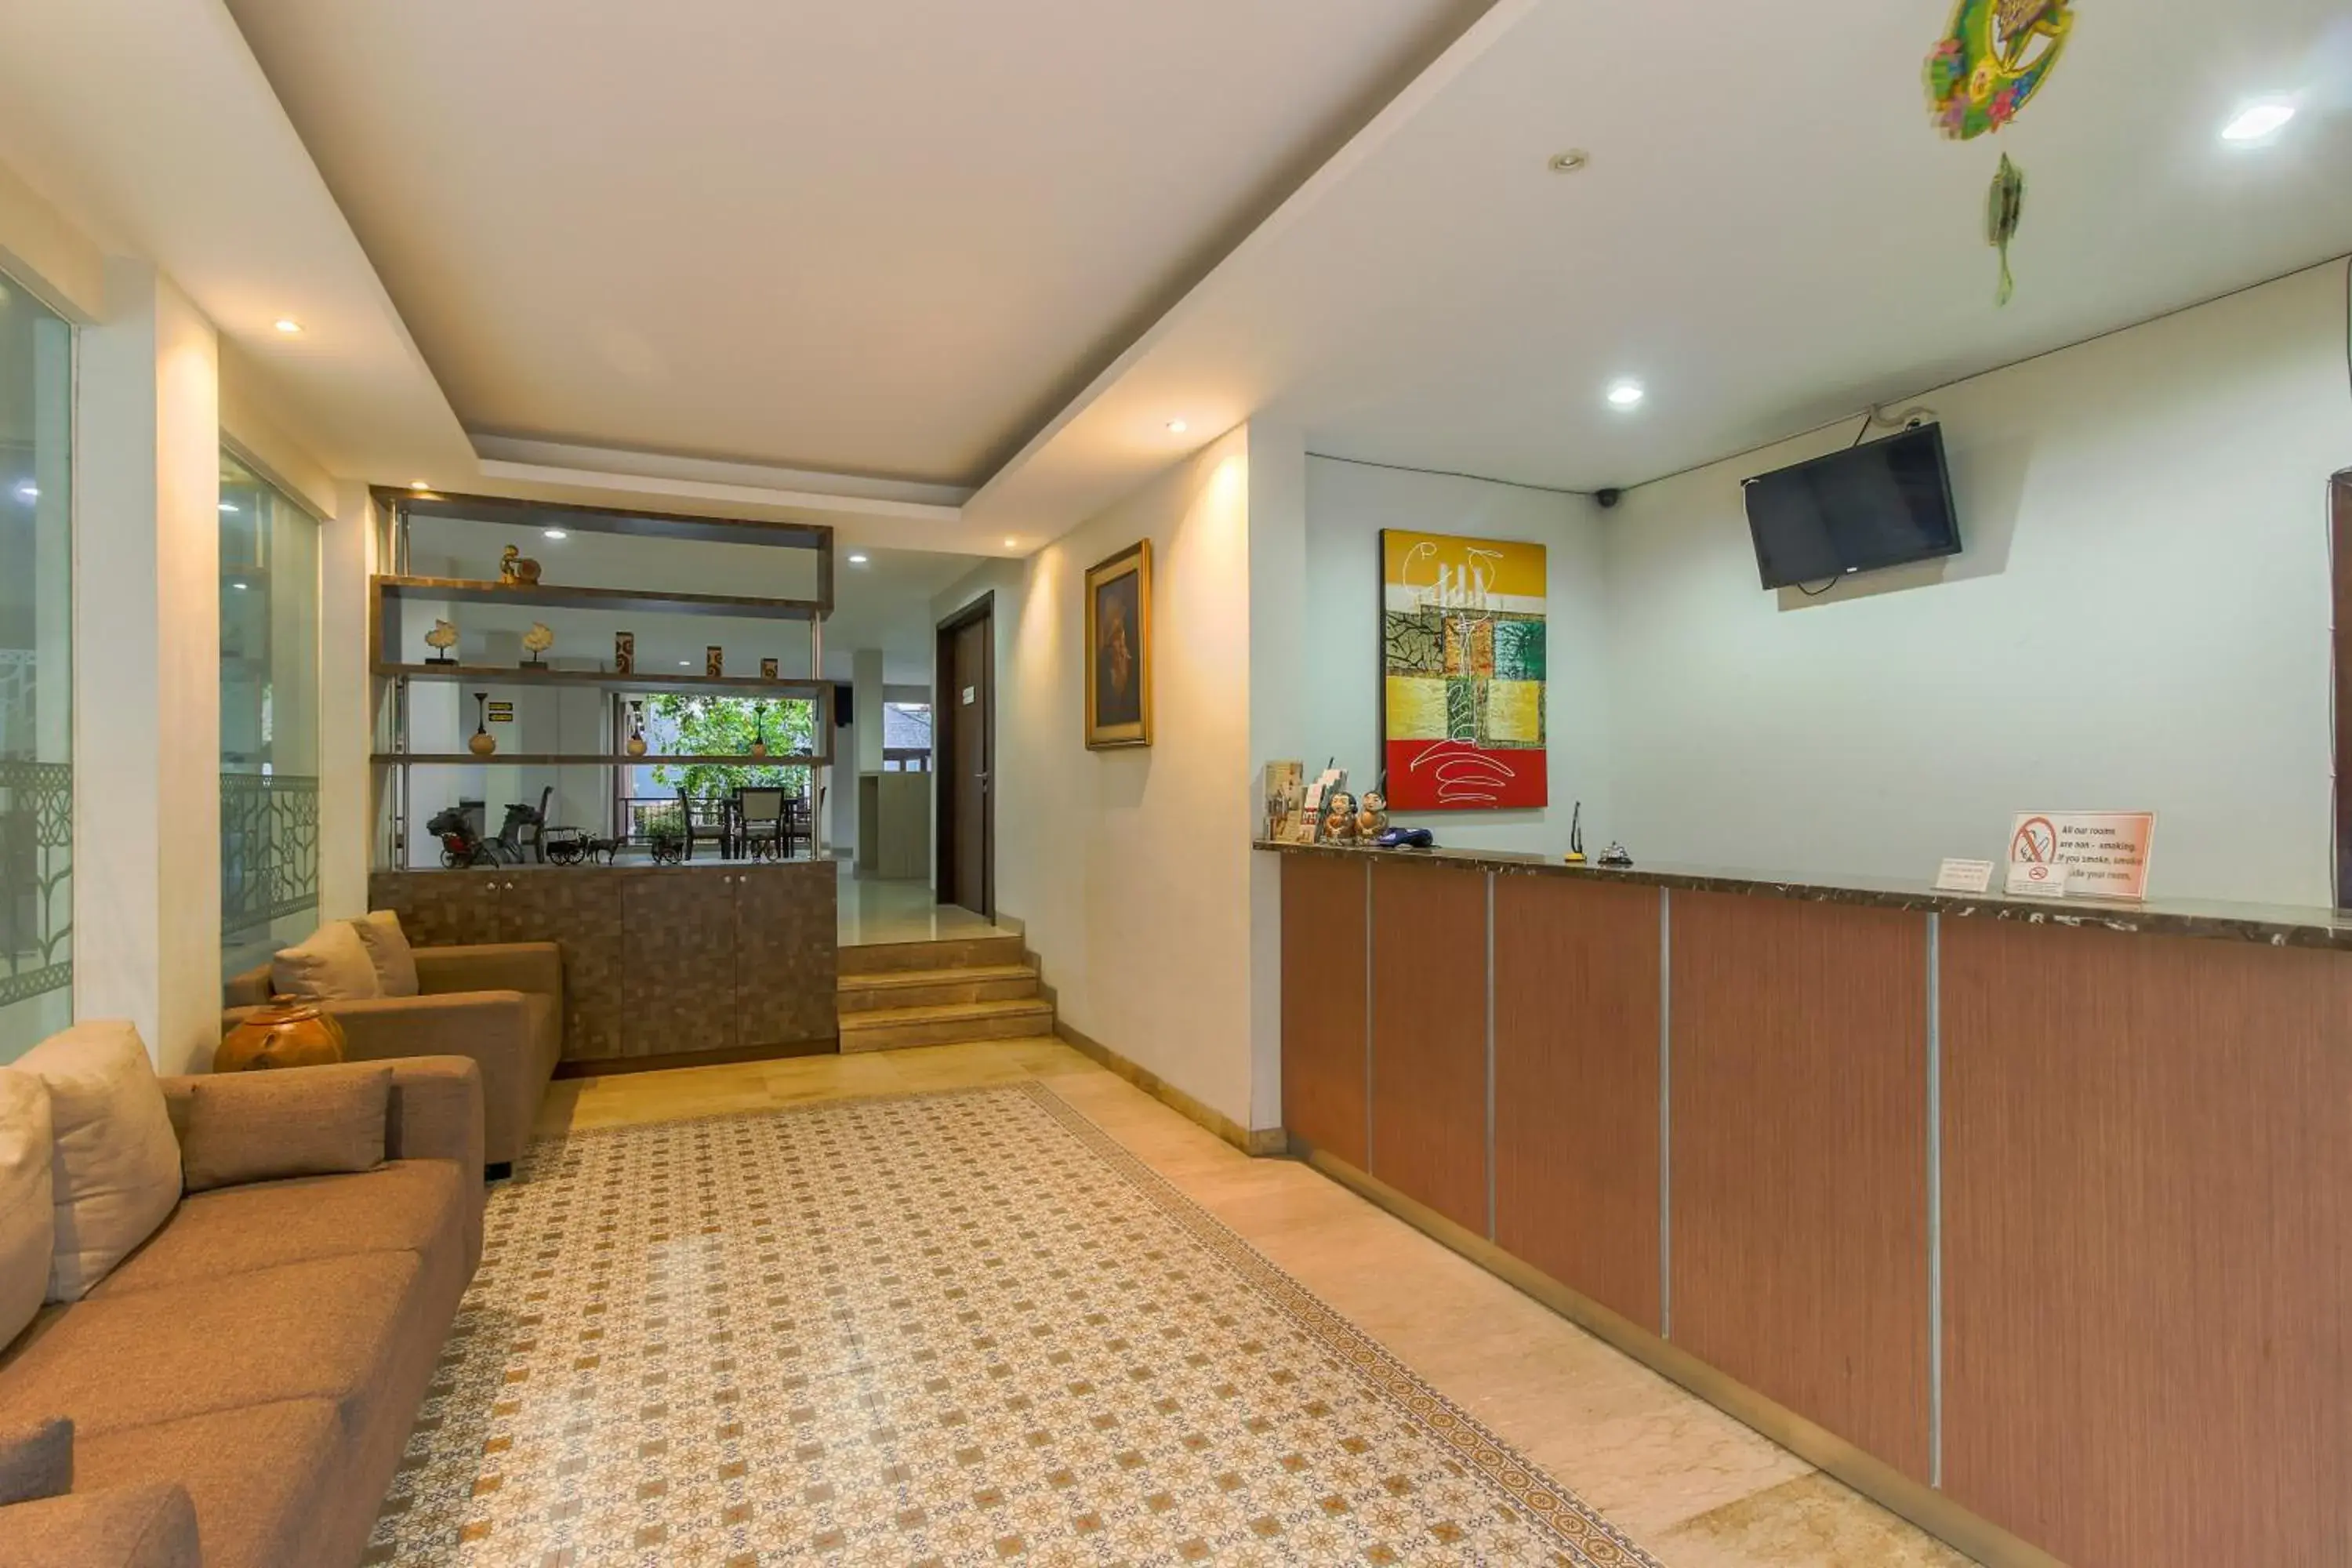 Lobby or reception, Lobby/Reception in RedDoorz Plus @ TB Simatupang